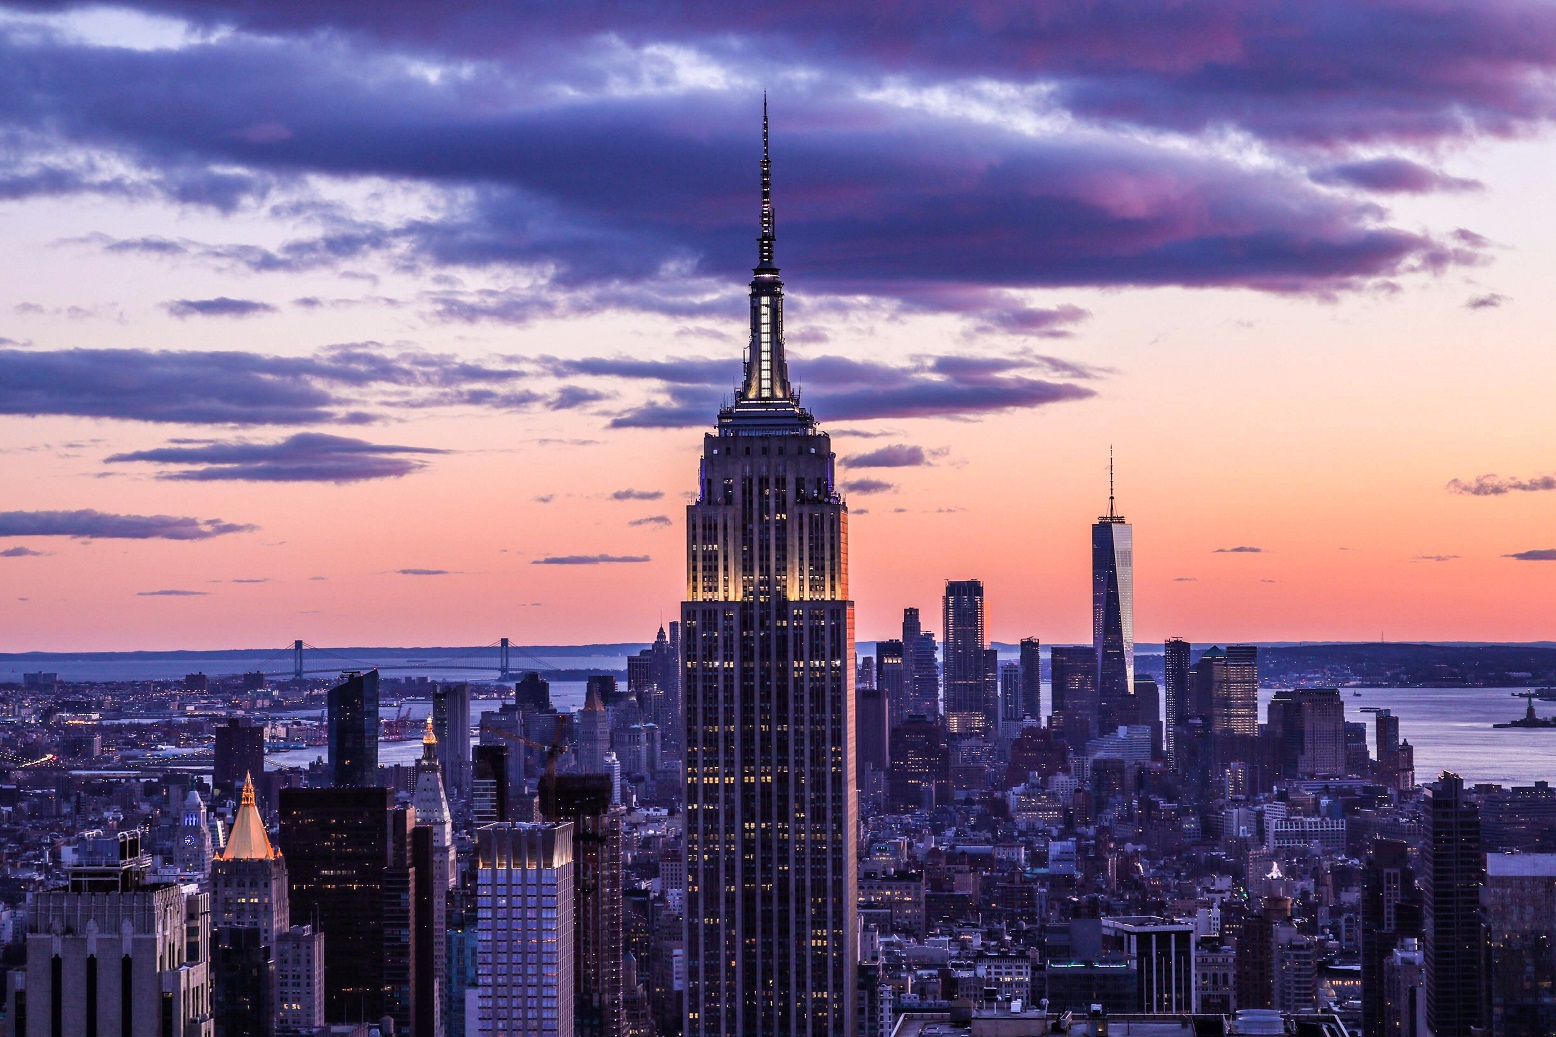 Immagine dell'Empire State Building